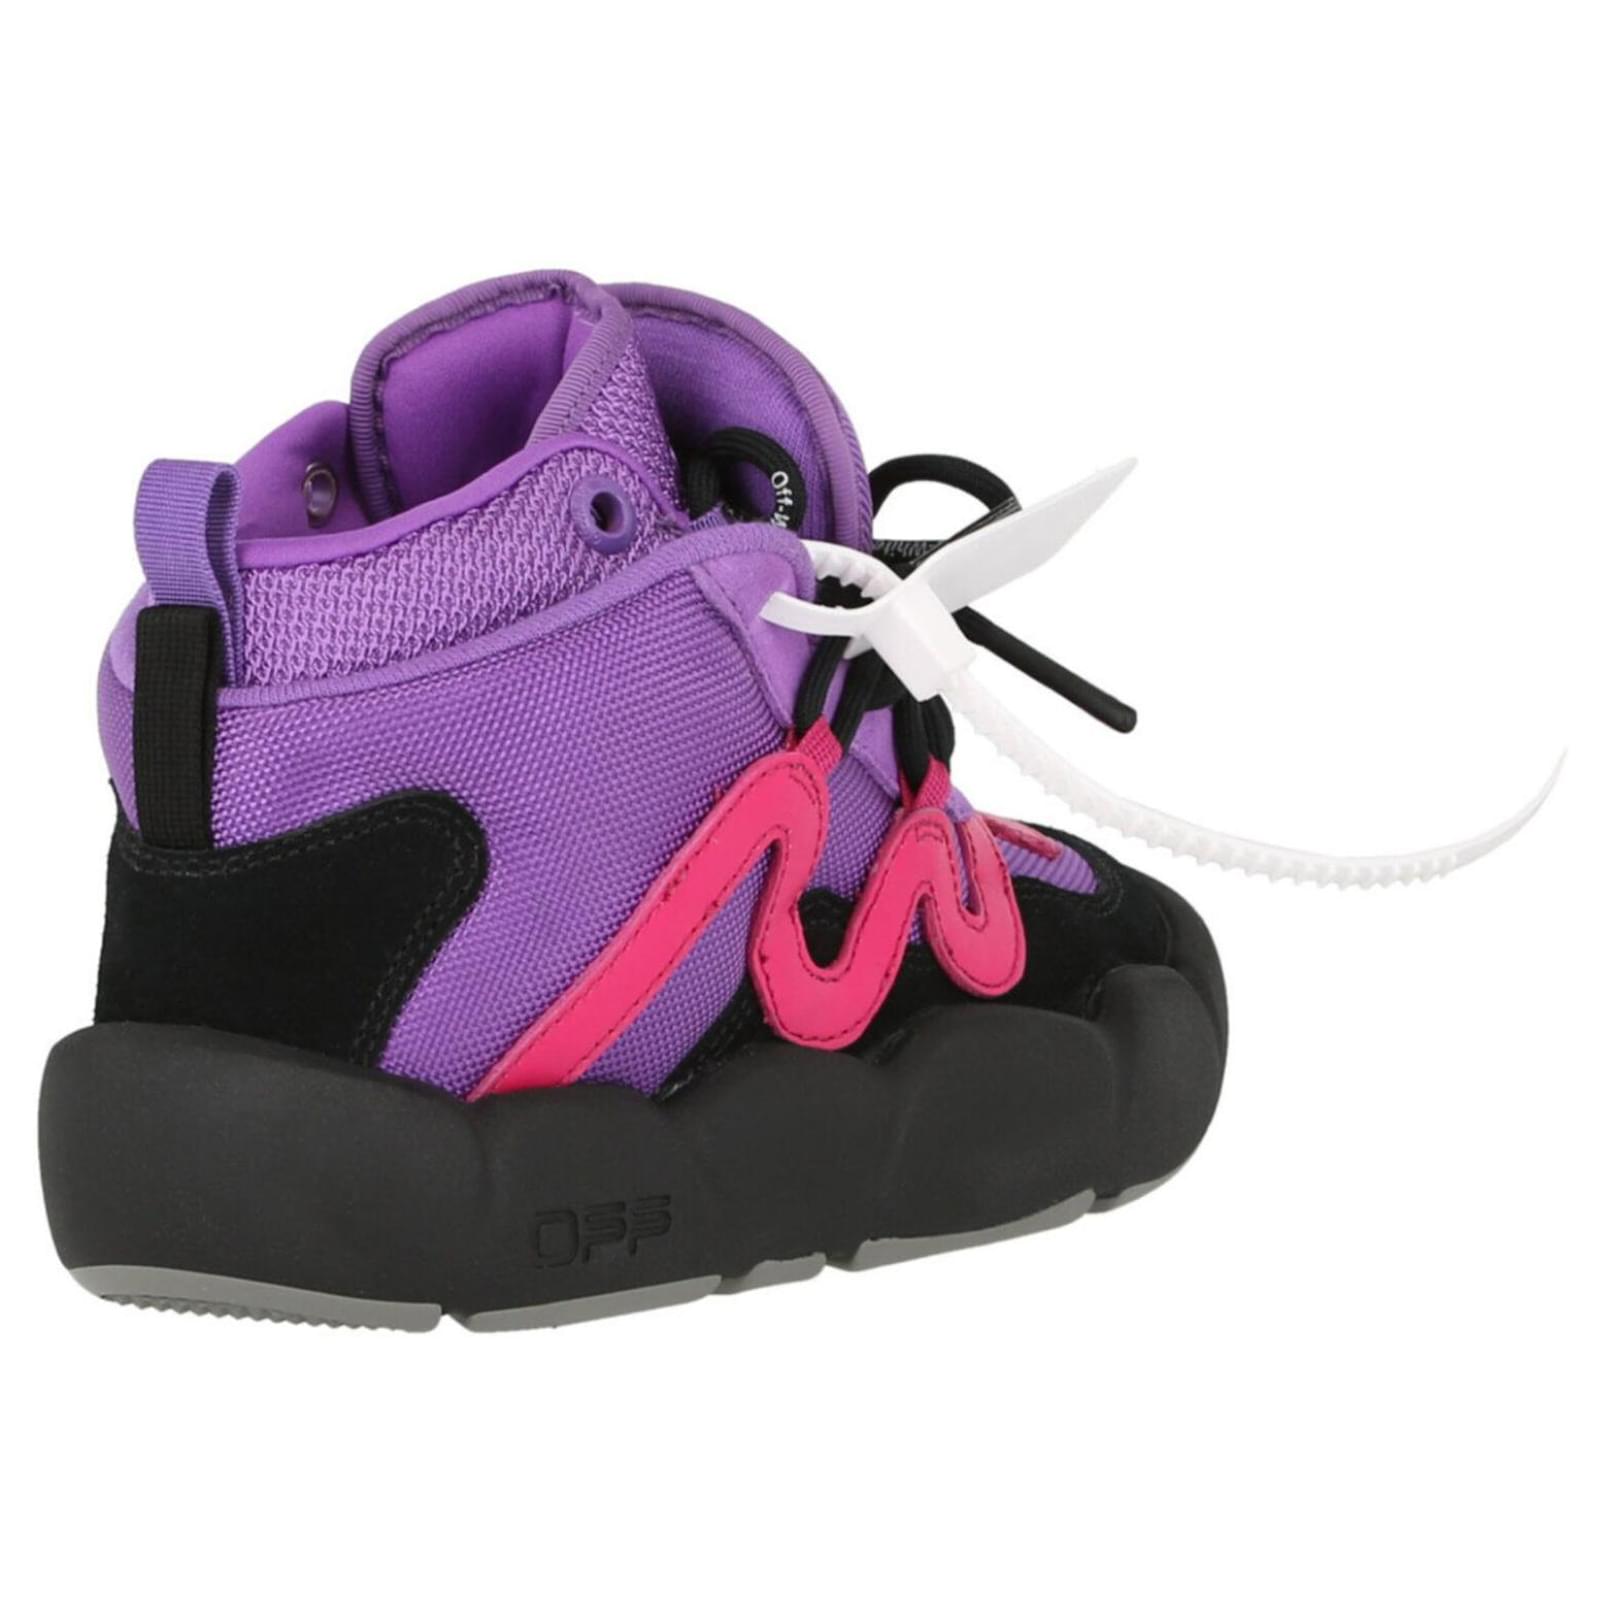 Off-White Purple Polyester Sneaker - Fizigo